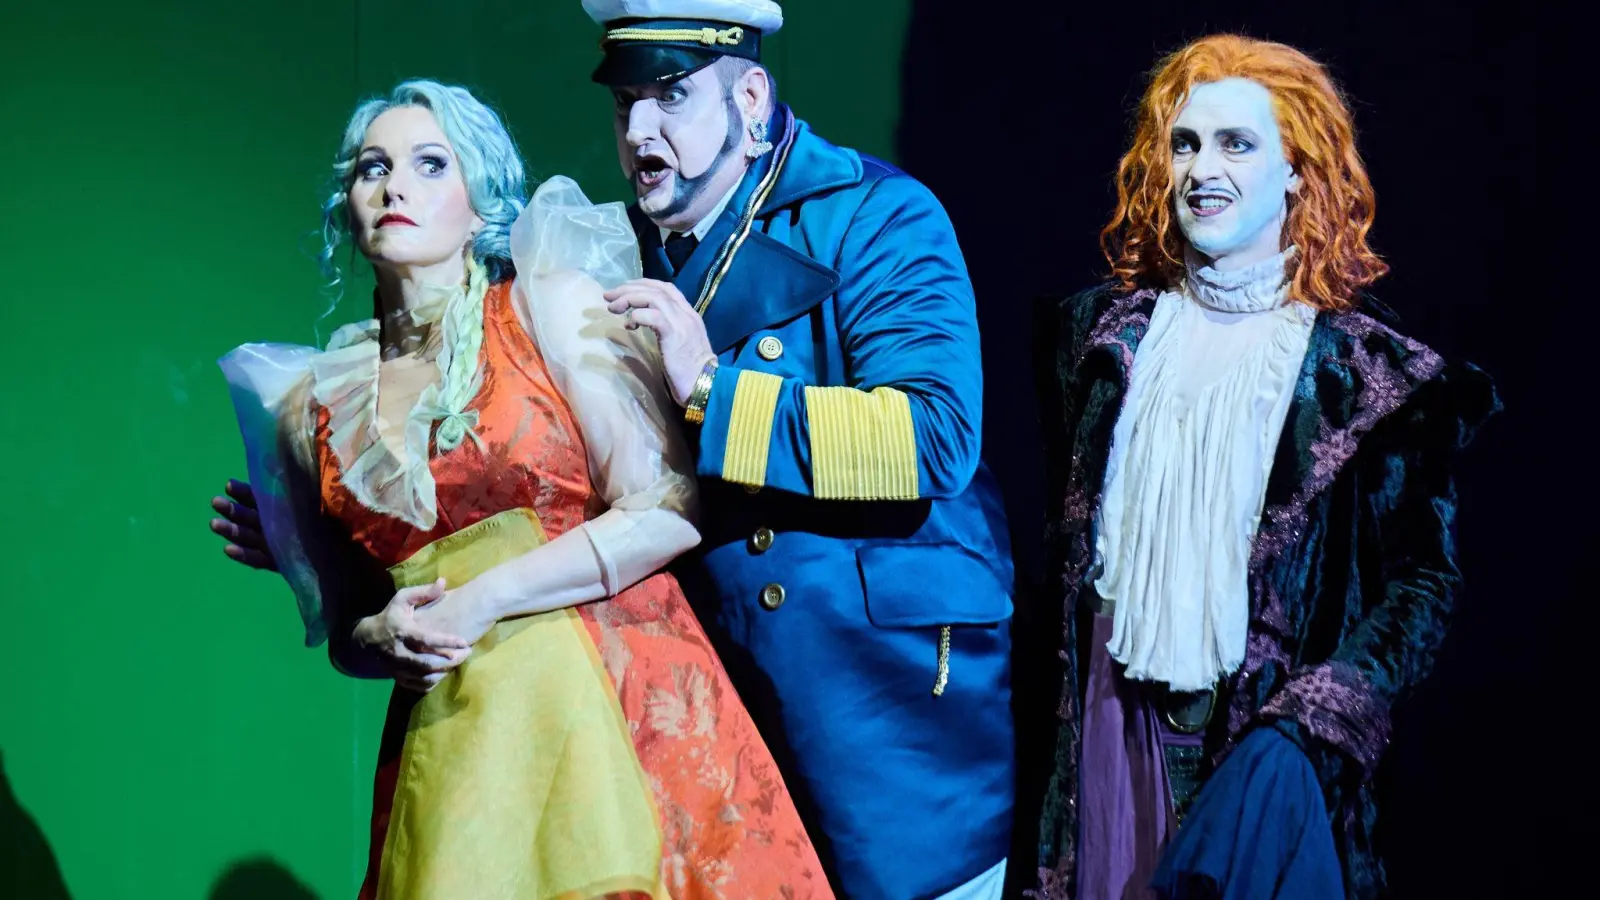 Senta (l-r, Daniela Köhler), Daland (Jens Larsen) und der Holländer (Günter Papendell) in der Komischen Oper. (Foto: Annette Riedl/dpa)